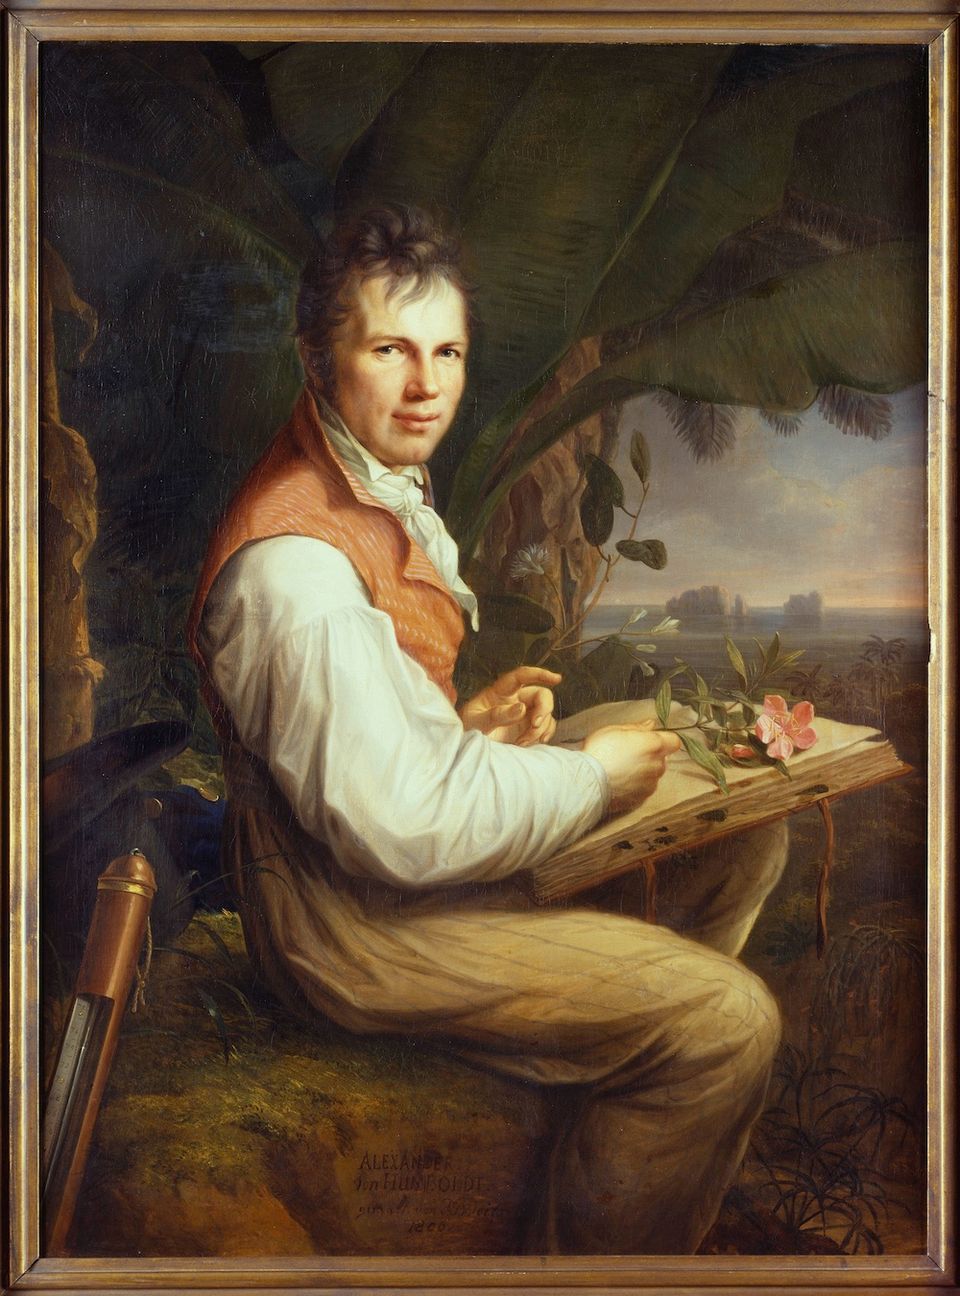 Portrait of Alexander von Humboldt by Friedrich Georg Weitsch. Man Sitting in front of a landscape.